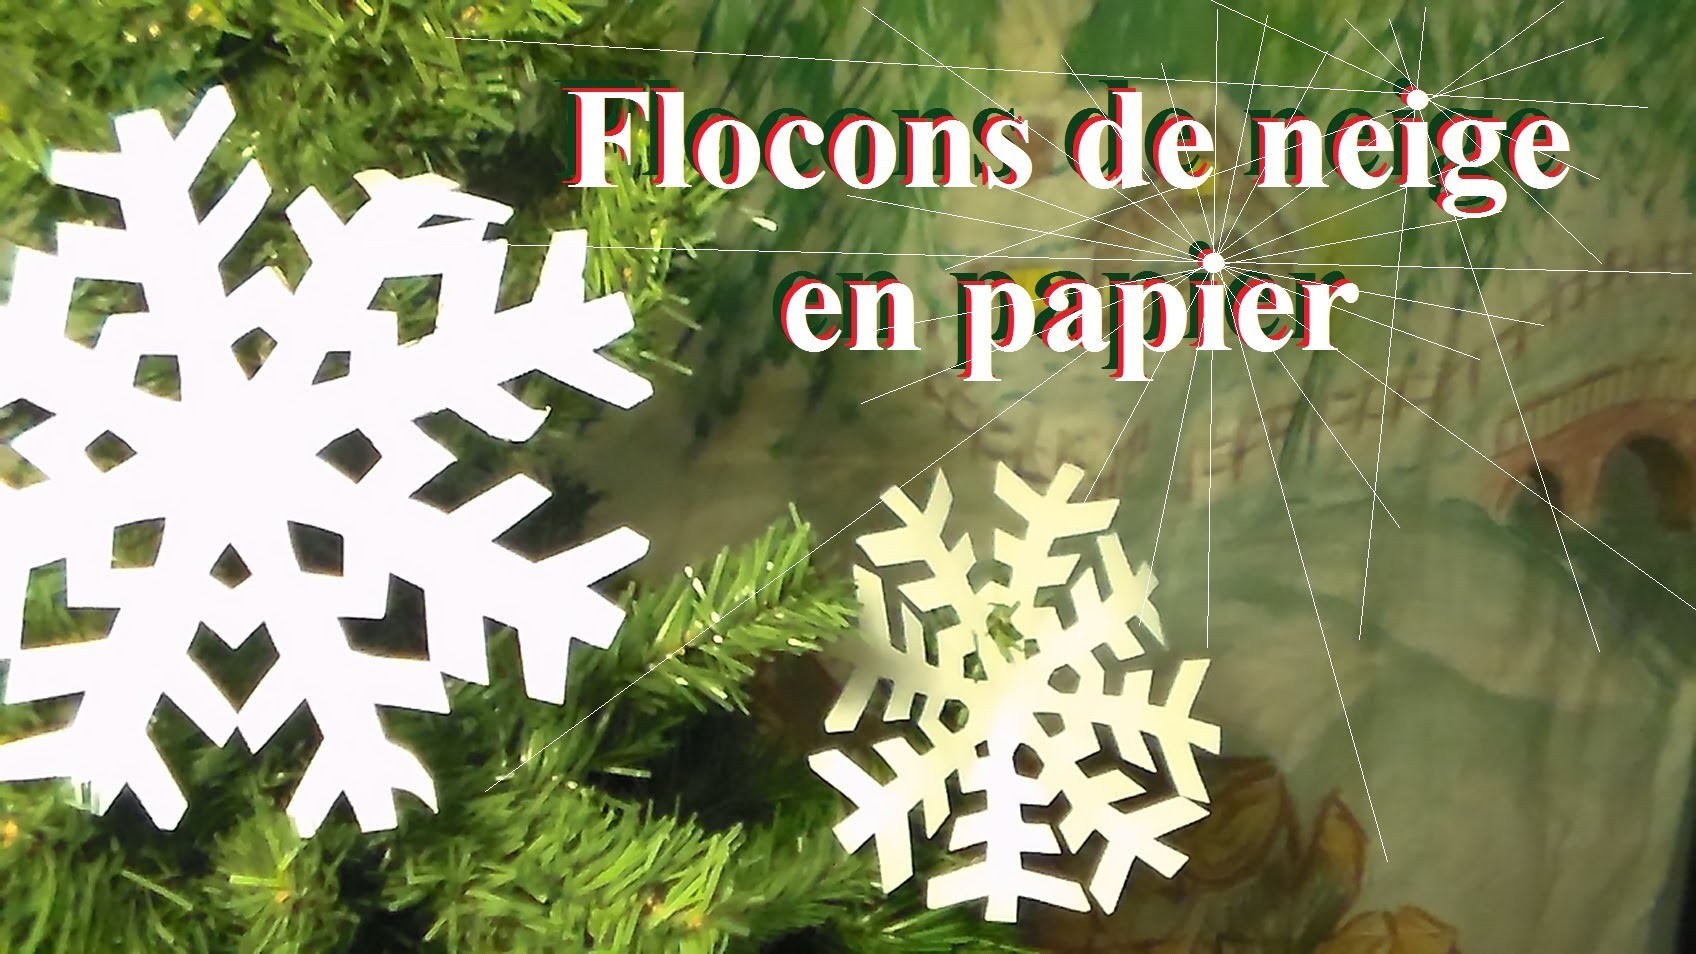 Fabriquer un flocon de neige en papier | Bricolage de Noël avec les enfants